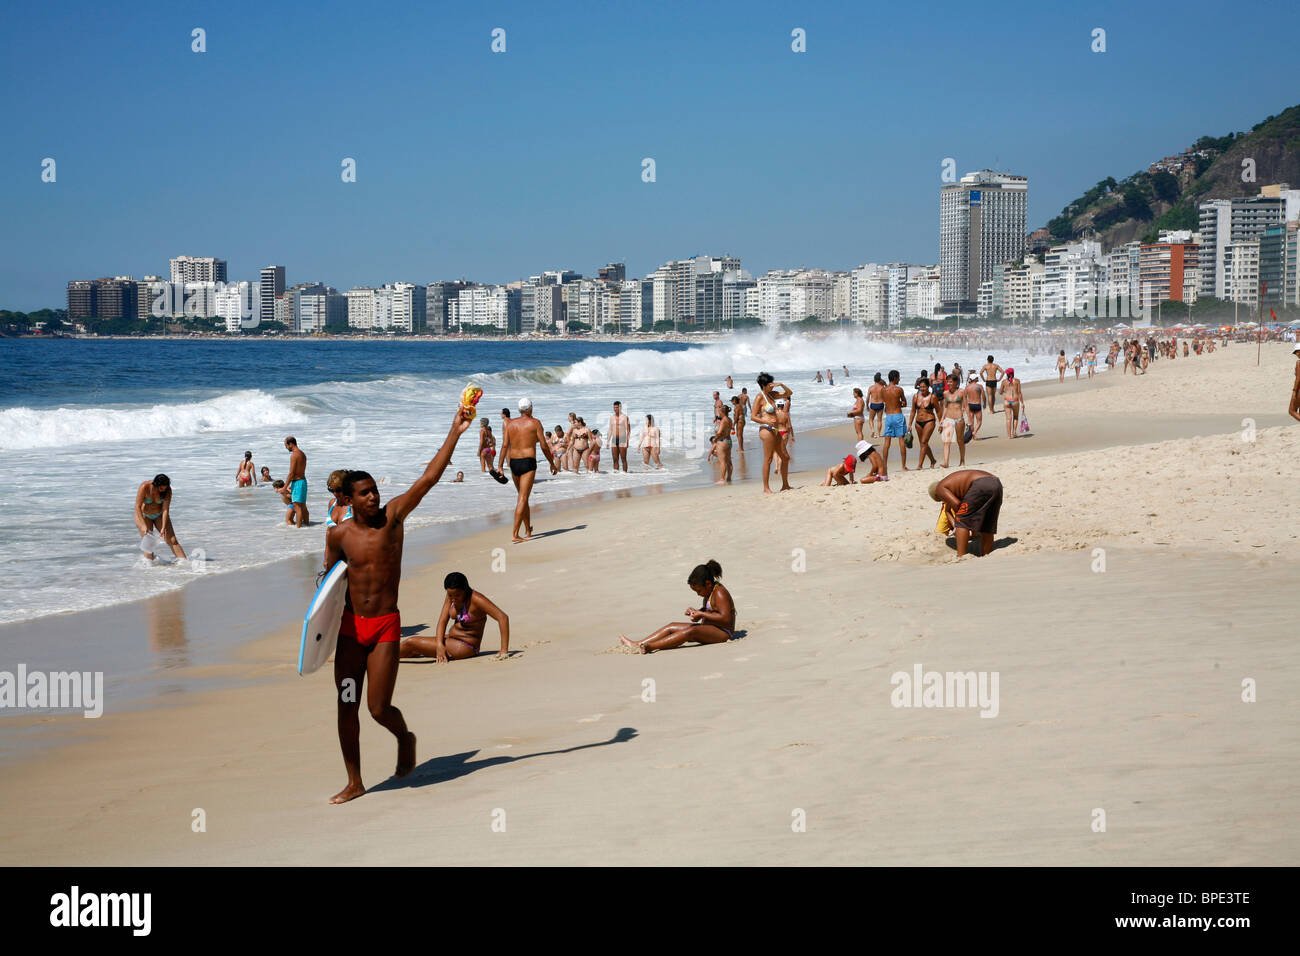 Copacabana beach, Rio de Janeiro, Brazil. Stock Photo